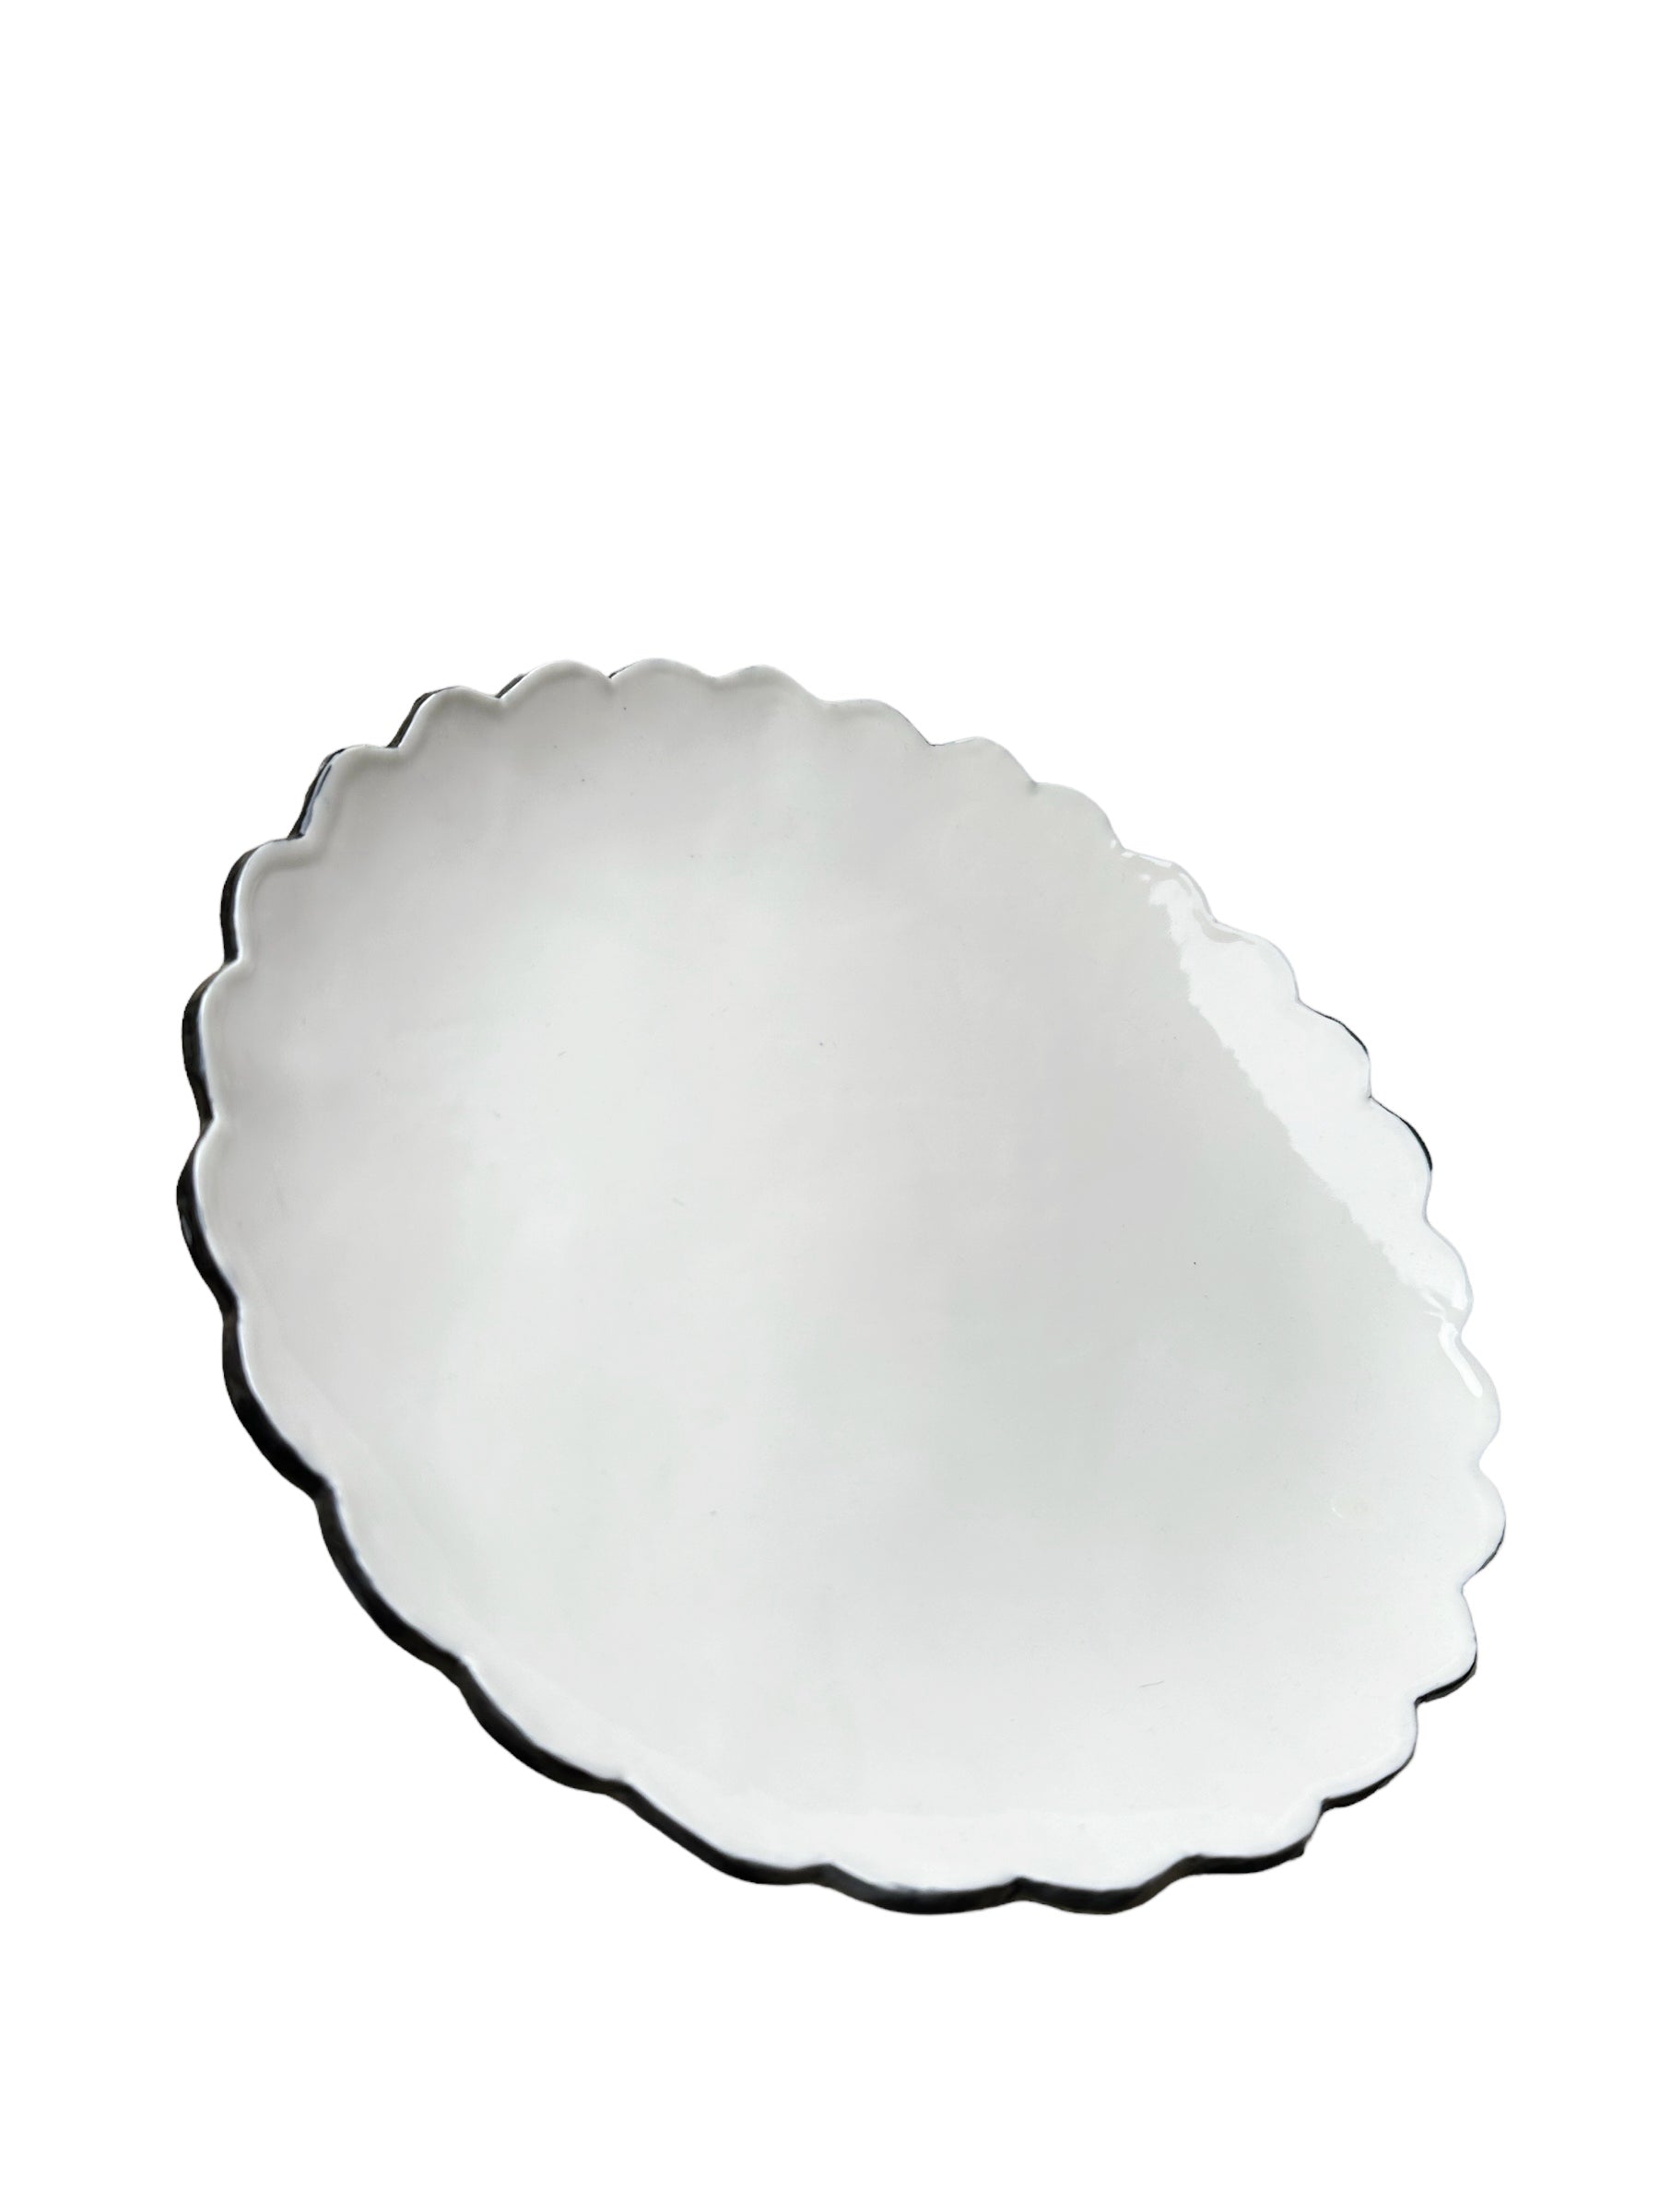 Joanna Ling Porcelain Scalloped Dinner Plate (w/ Black Edge)